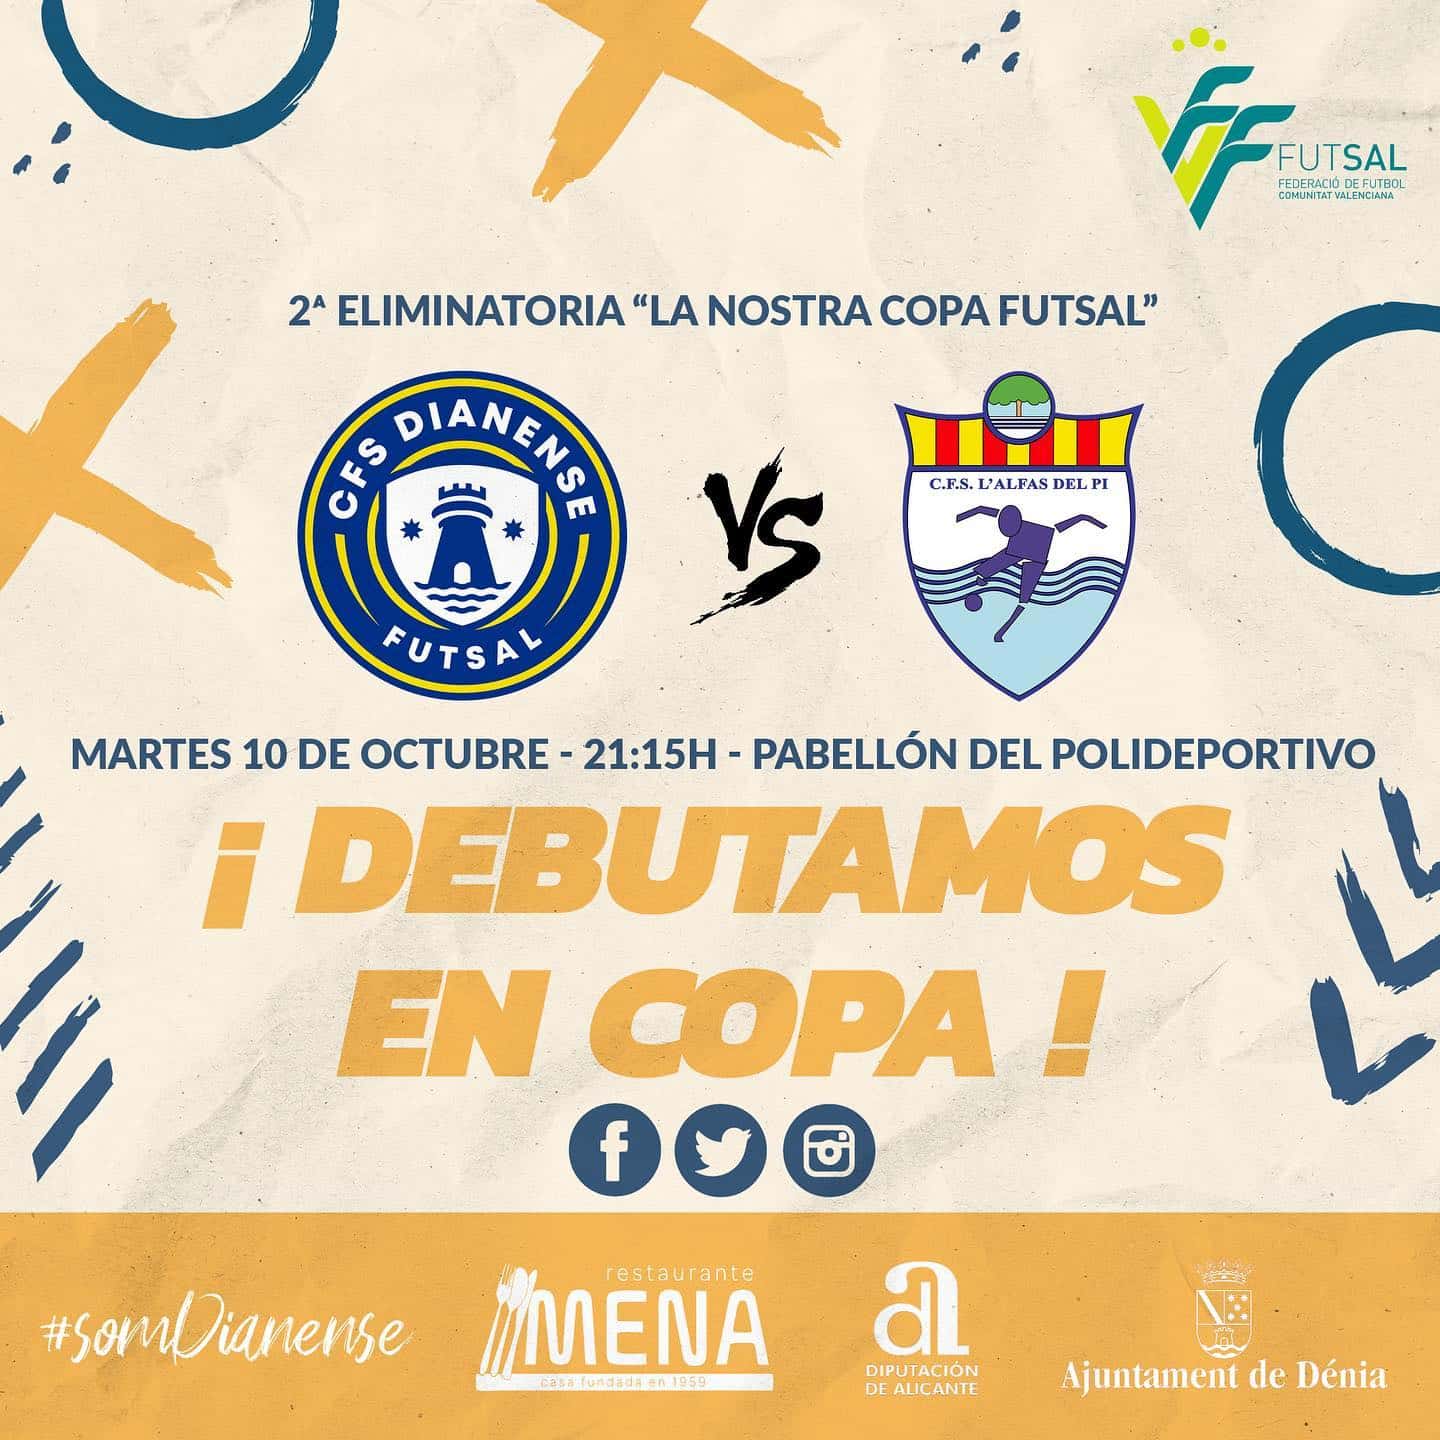 la Nostra Copa Futsal: Dianense vs C.F.S. L’Alfàs del Pi